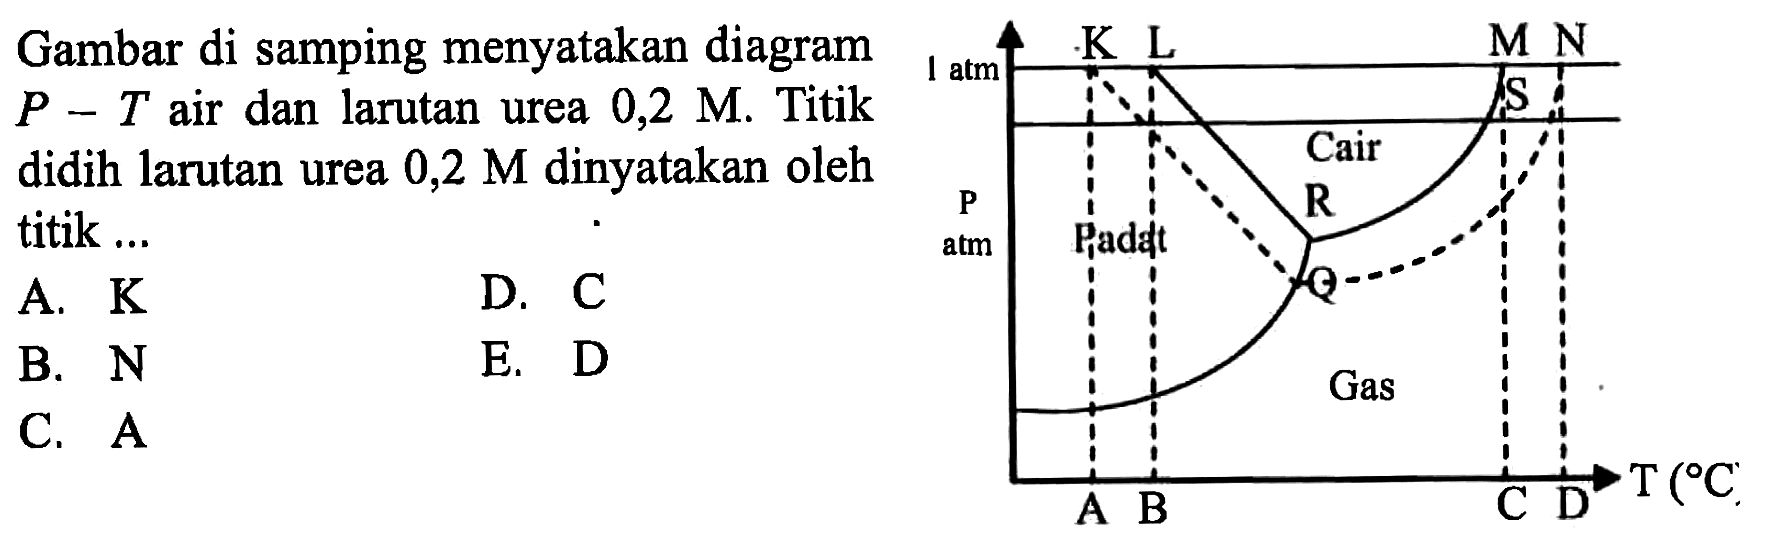 Gambar di samping menyatakan diagram P-T air dan larutan urea 0,2 M. Titik didih larutan urea 0,2 M dinyatakan oleh titik ... 1 atm K L M N Cair P atm Padat R Q Gas A B C D T (C) A. K B. N C. A D. C E. D 